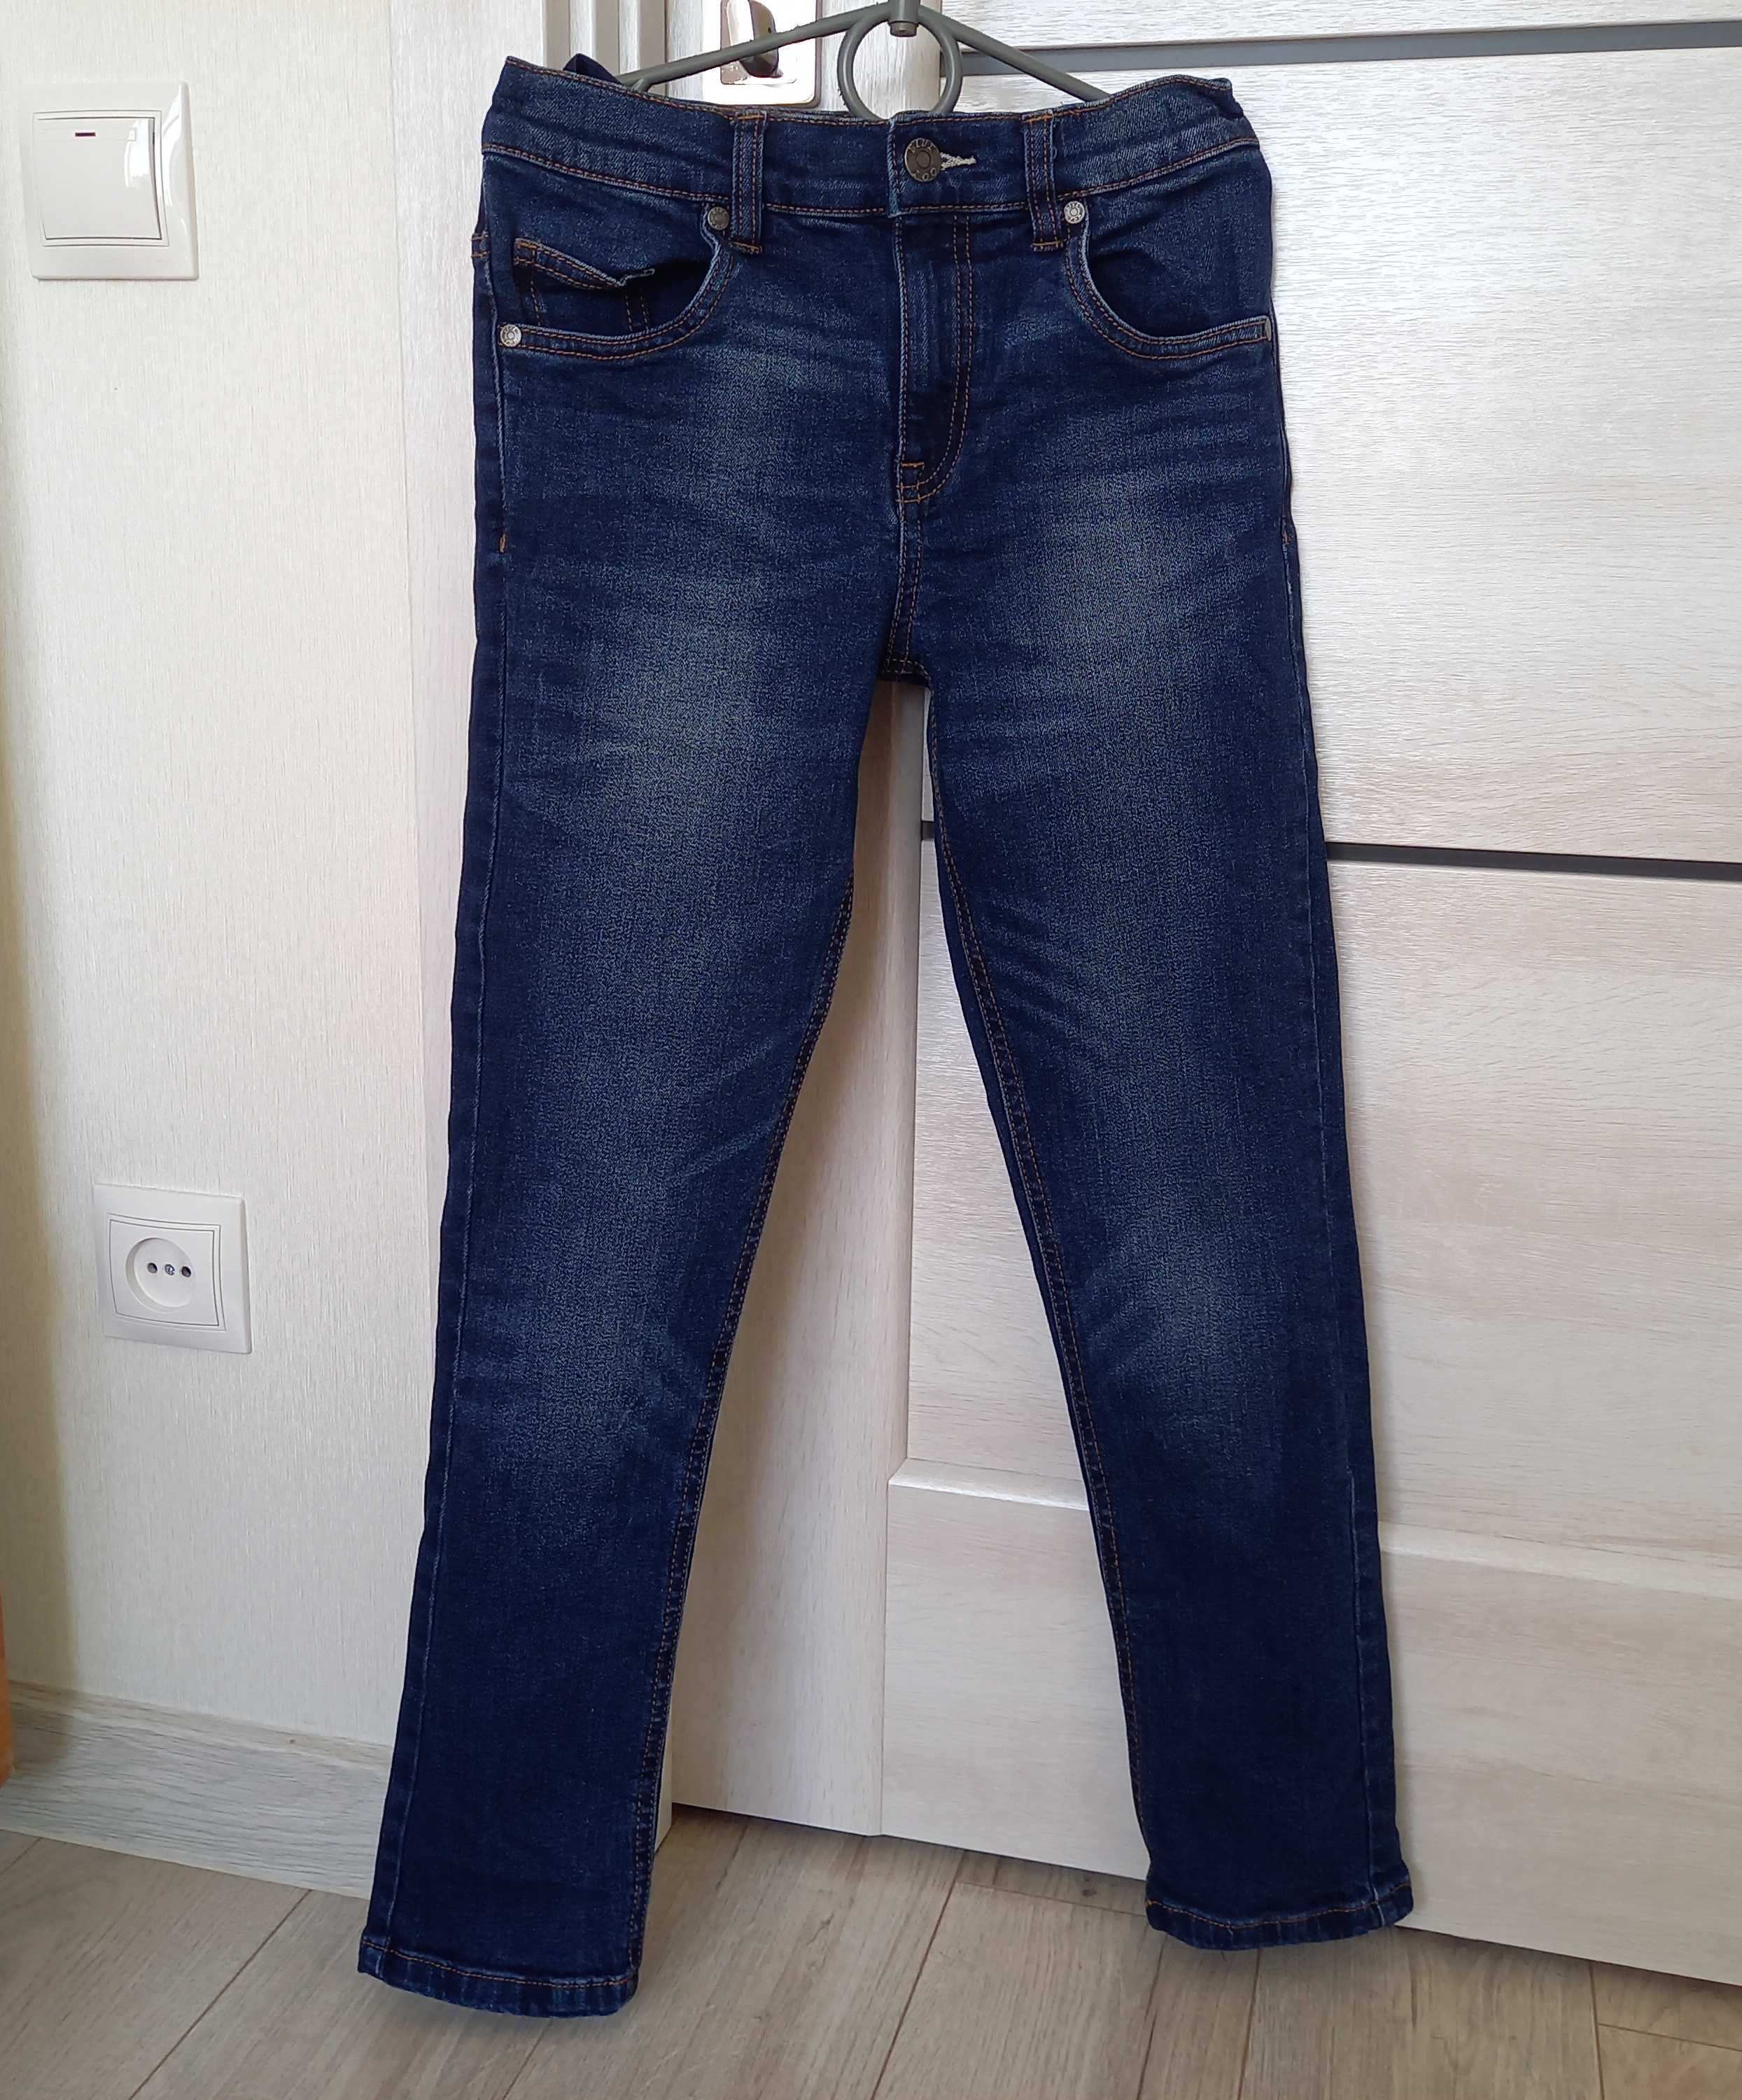 Фірмові модні зручні фірмові джинси сині для хлопчика 9-11 років ідеал